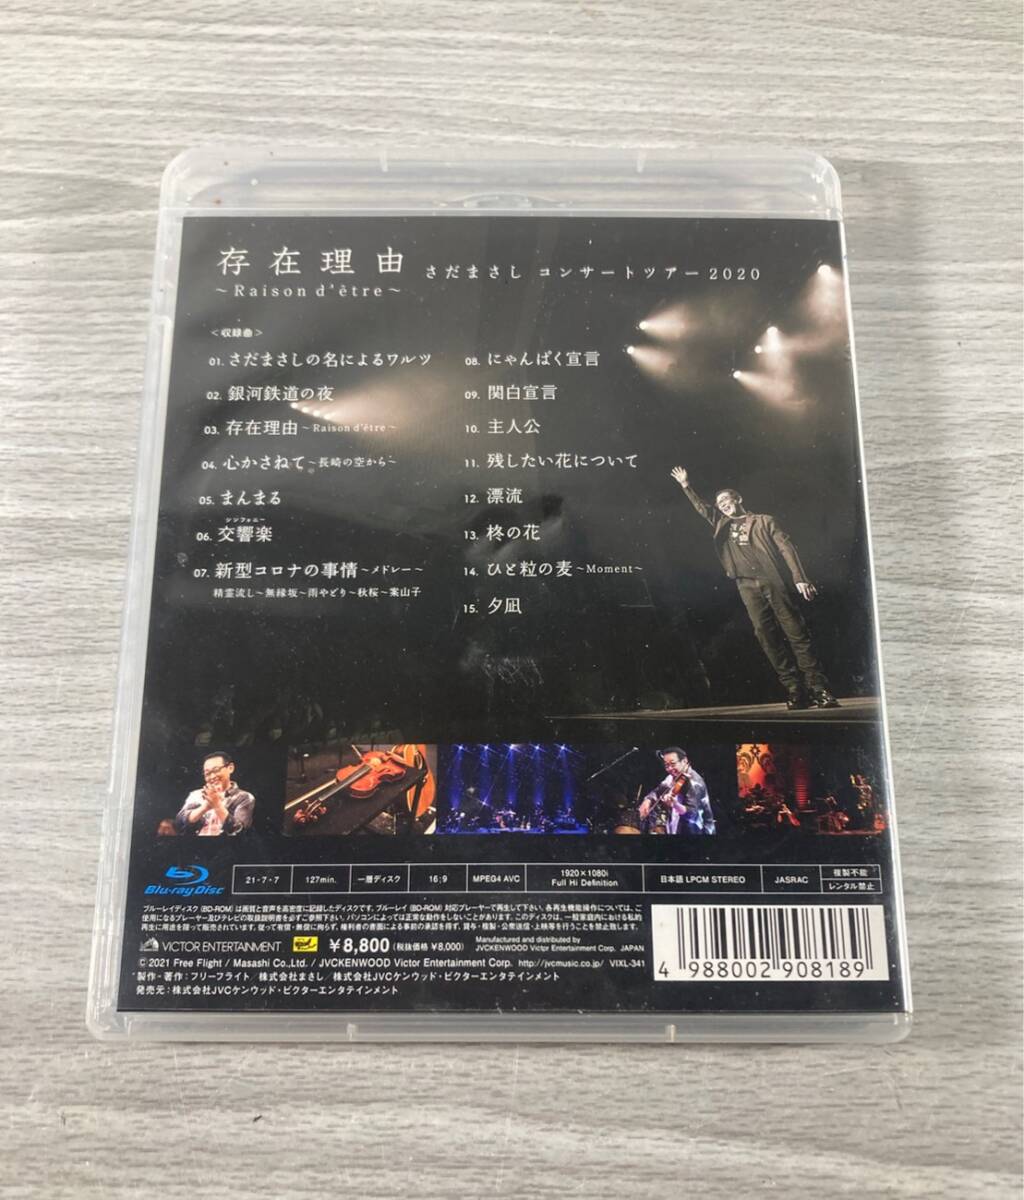 [5-4] さだまさし コンサートツアー2020 存在理由 〜Raison d'etre〜 Blu-ray Discの画像2